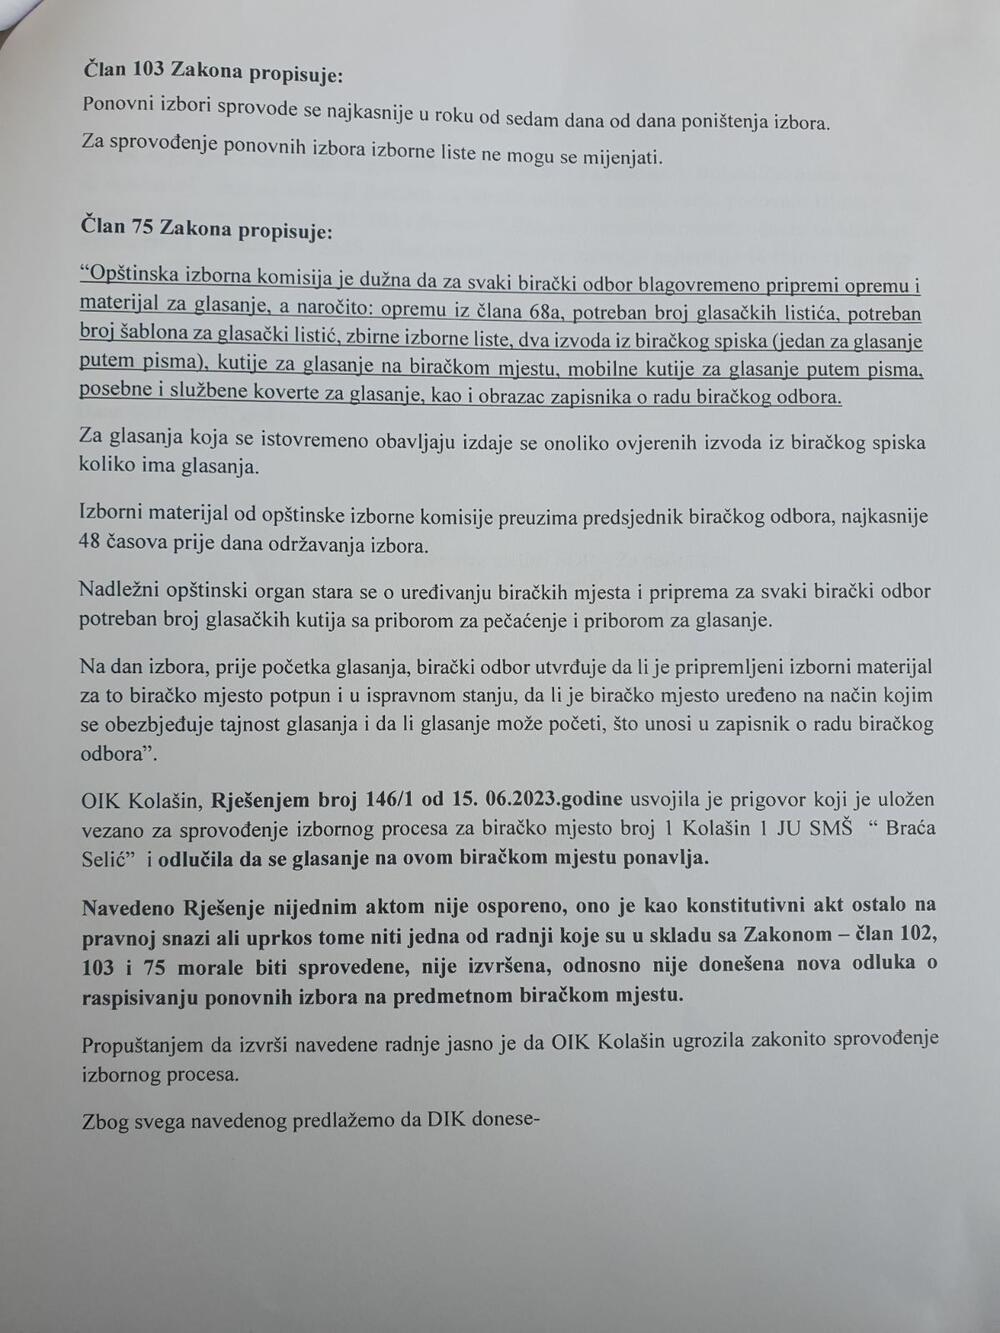 <p>SDP smatra da postoji pravni osnov da Opštinska izborna komisija (OIK) Kolašin raspiše nove izbore na biračkom mjestu broj 1 SMŠ "Braća Selić", jer je aktuelna ranija odluka OIK o tome, objašnjeno je "Vijestima"</p>